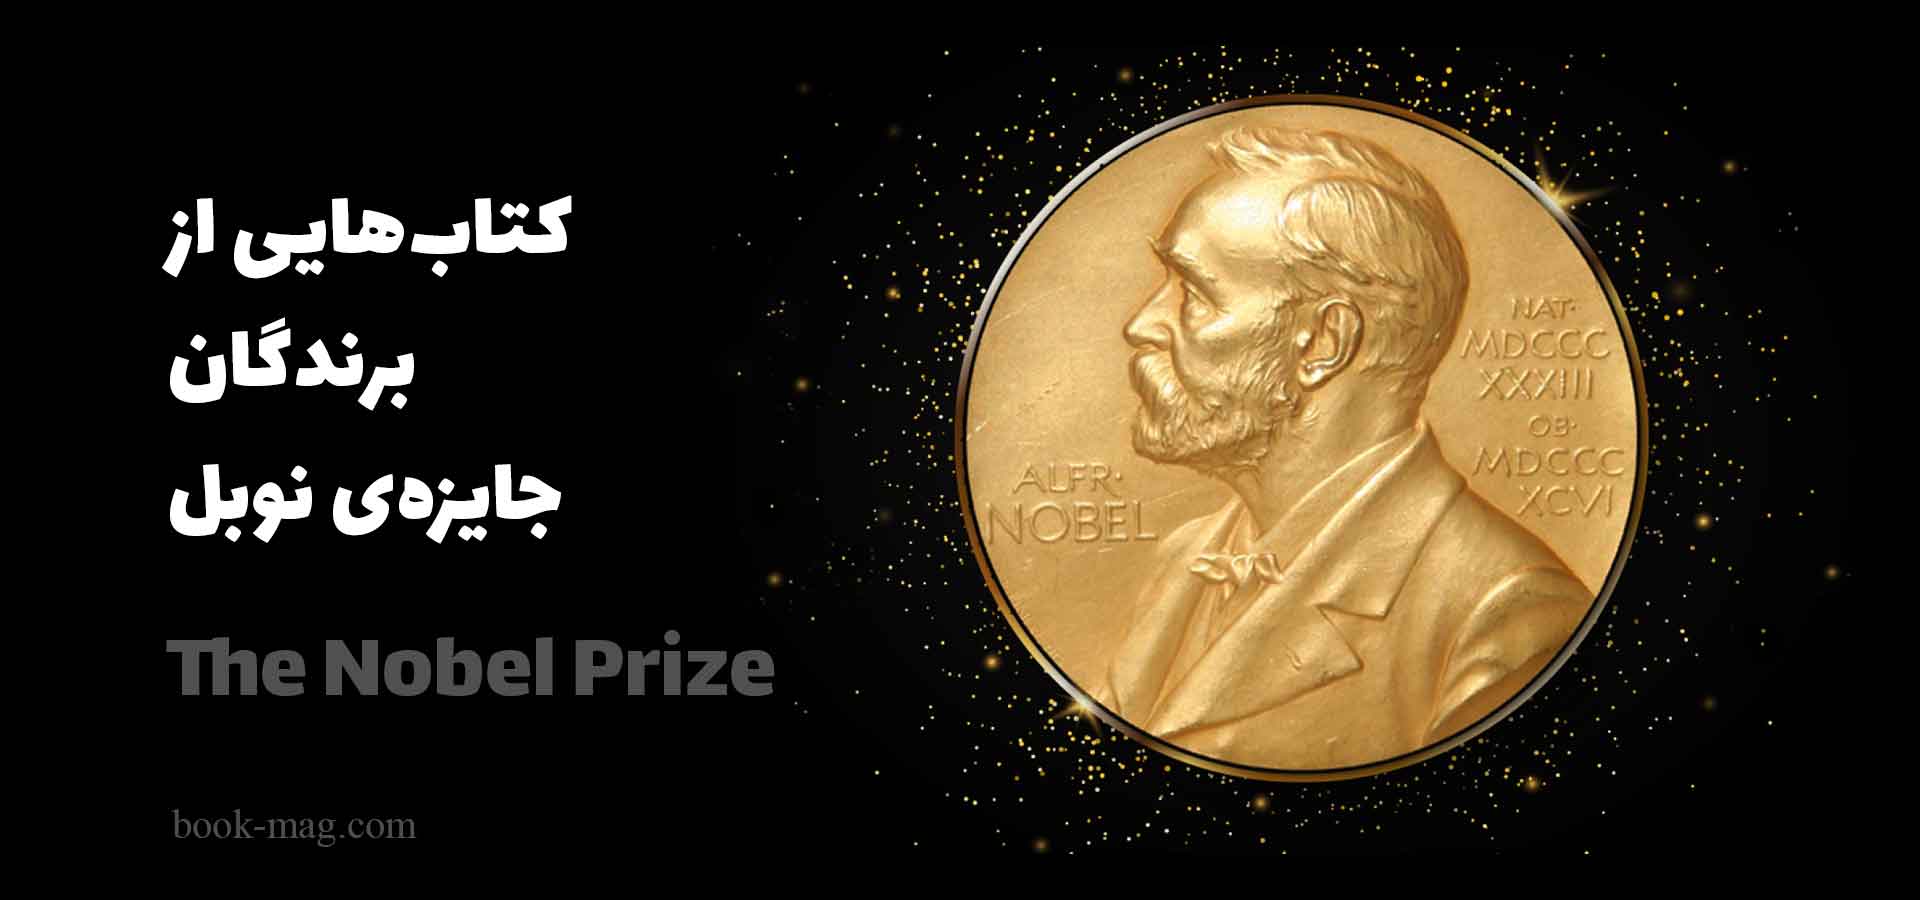 کتاب های برندگان جایزه نوبل به زبان فارسی + بوک مگ